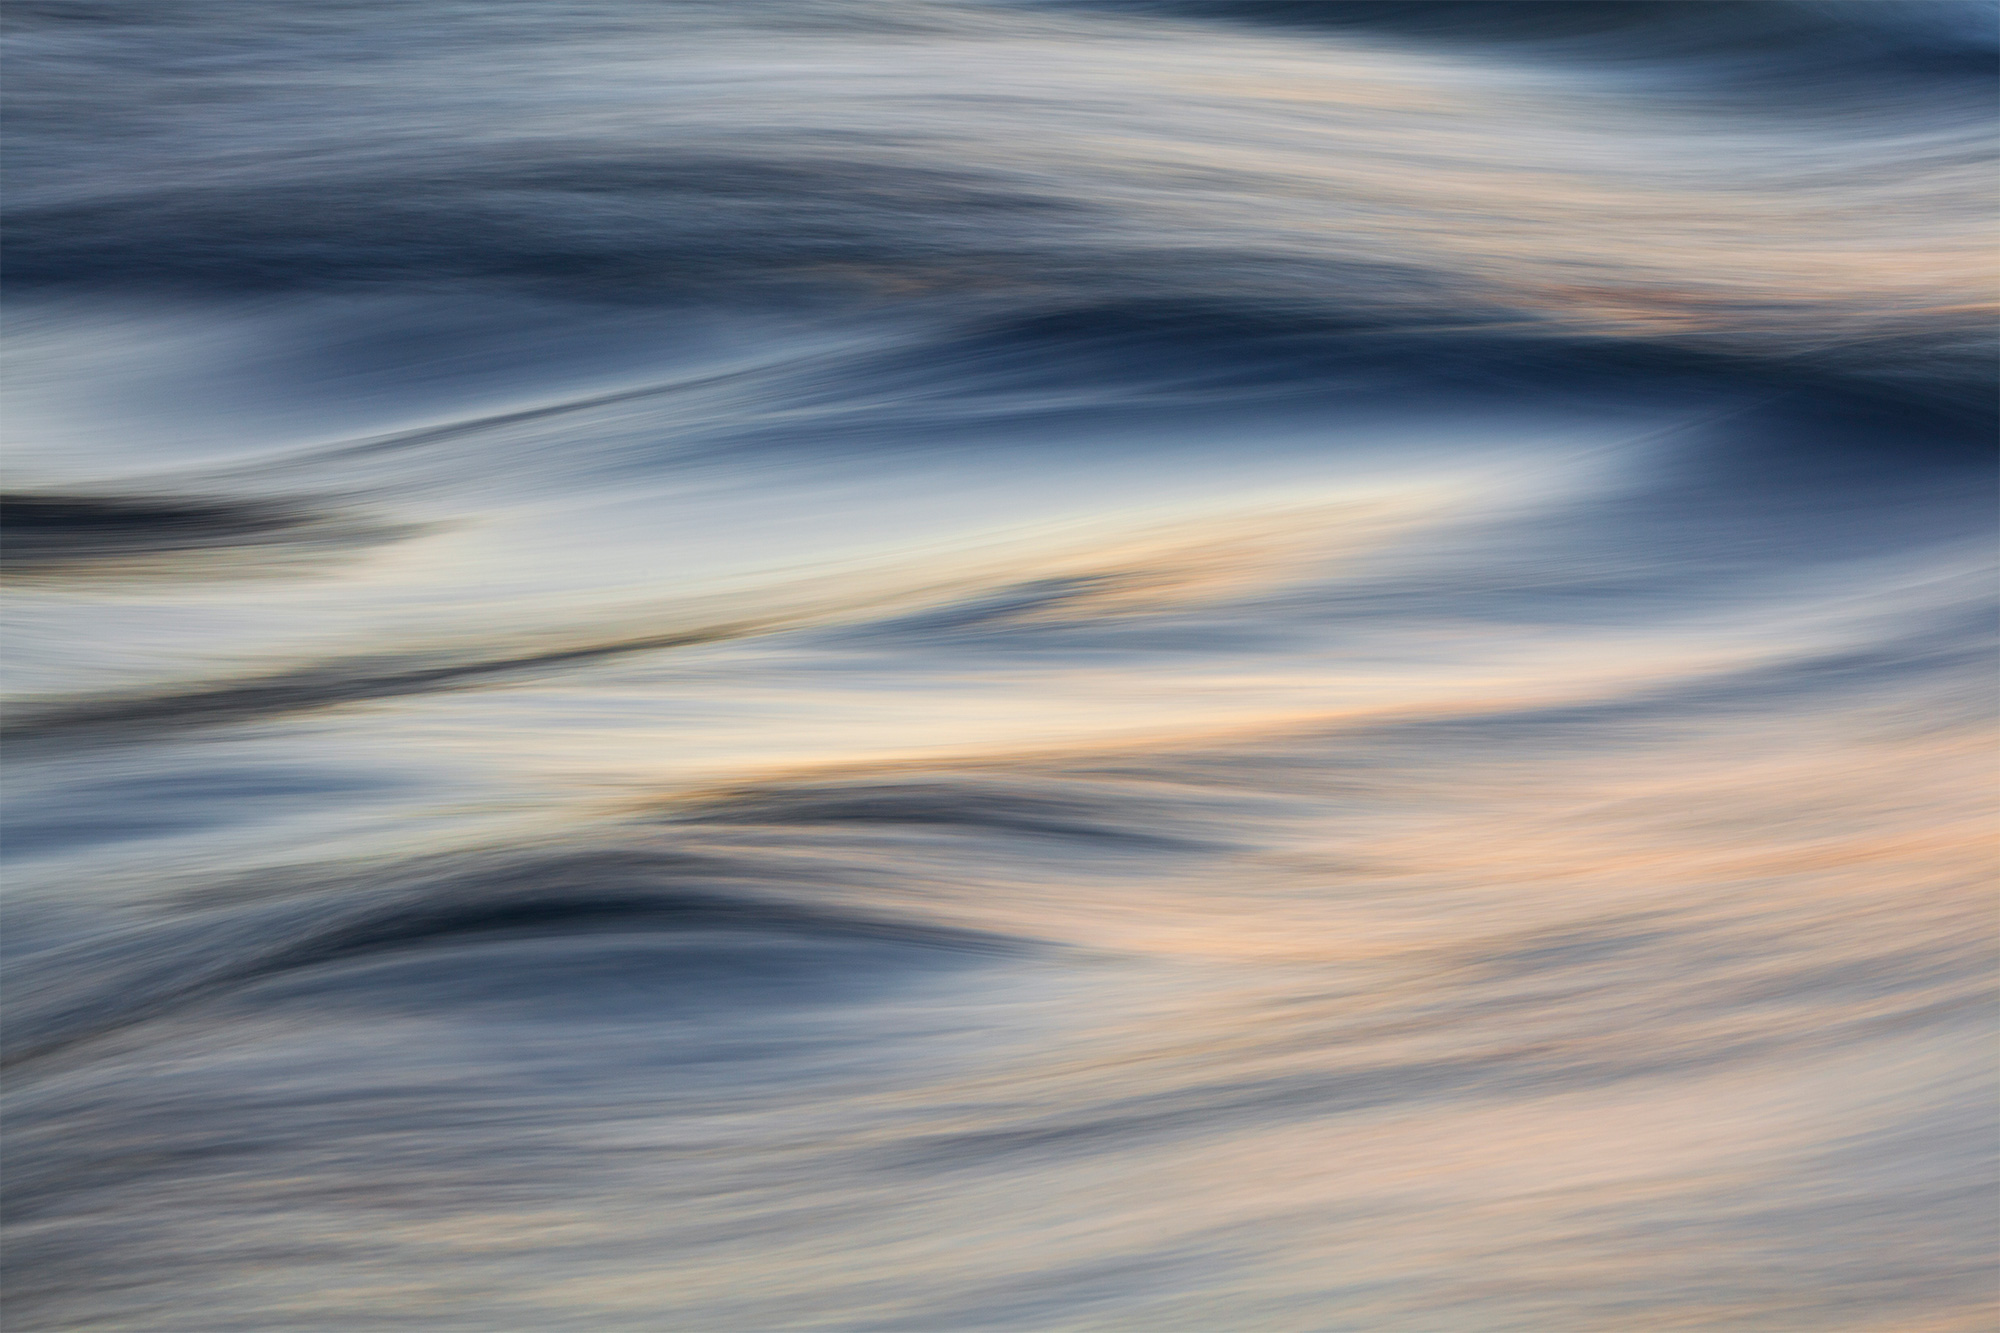 Water abstract along Frenchman Bay, Acadia National Park